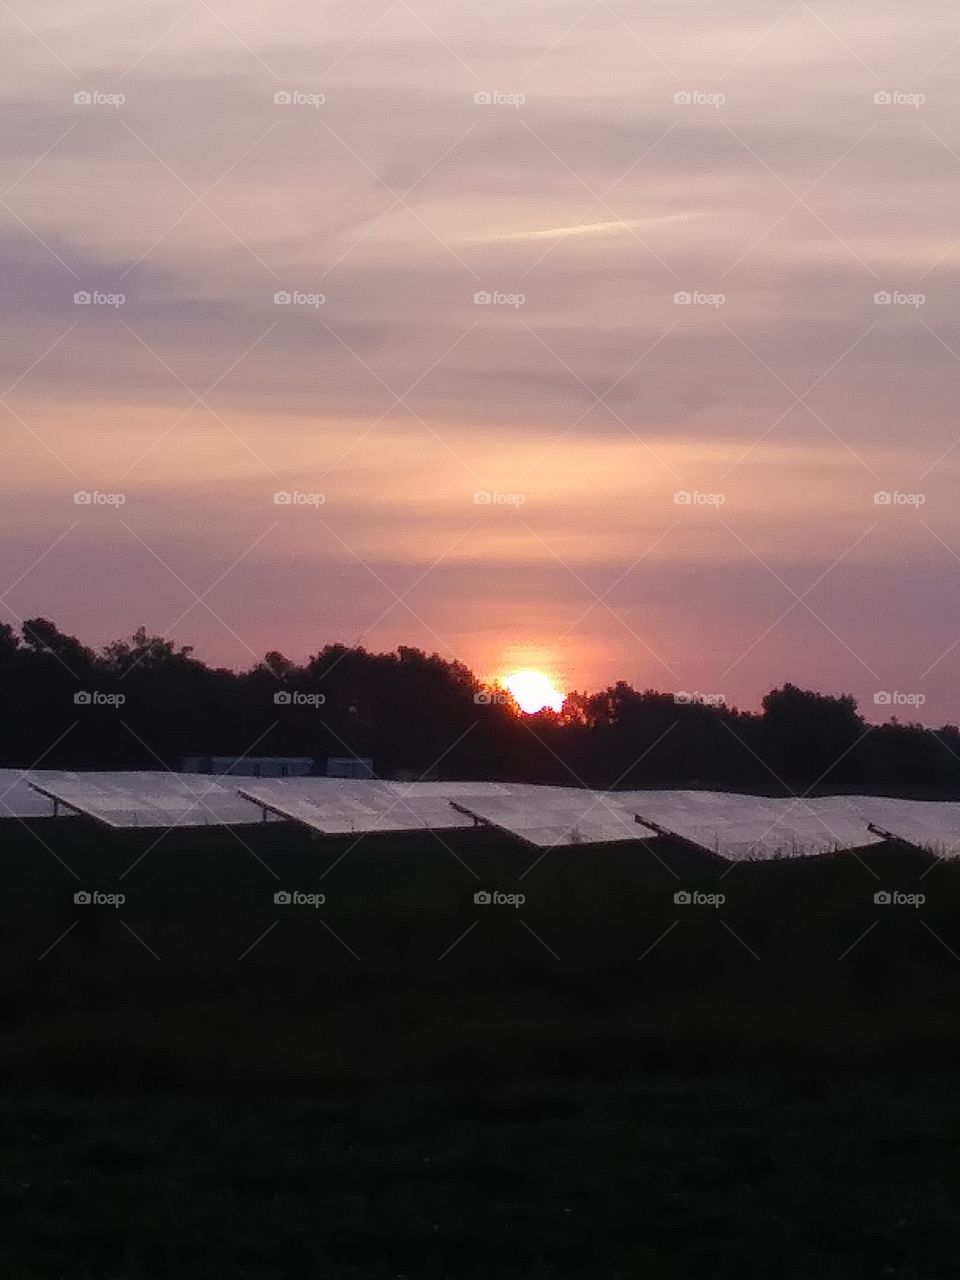 solar farm sun rise!